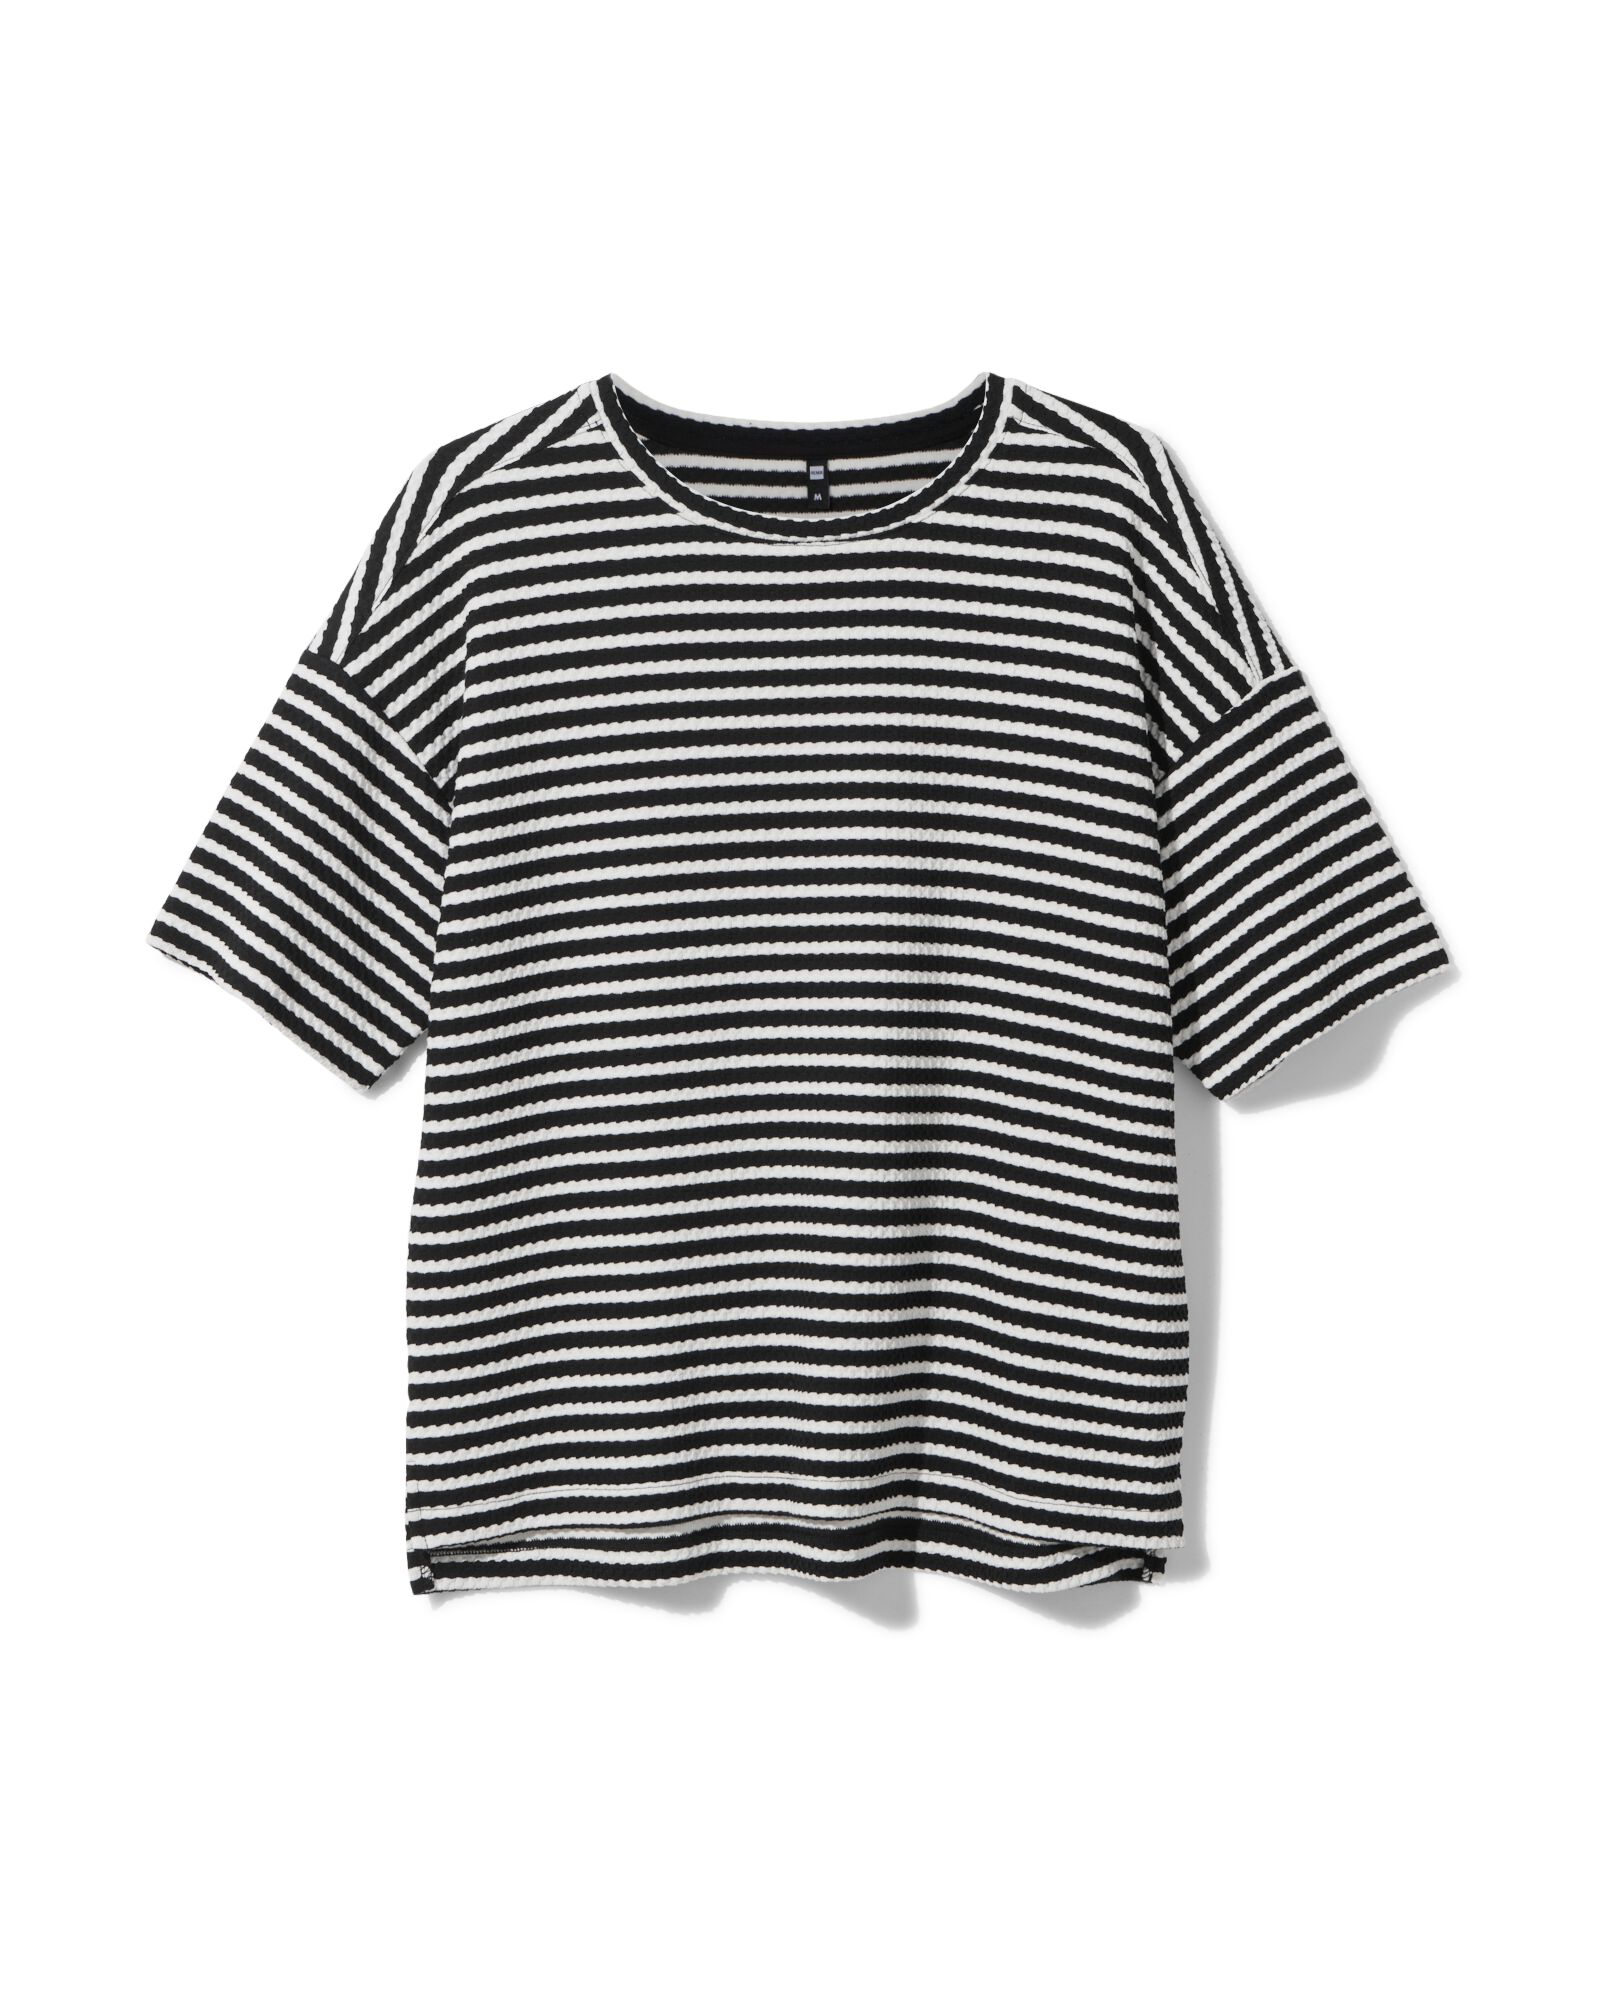 Damen-T-Shirt Cherry schwarz/weiß schwarz/weiß - 36296820BLACKWHITE - HEMA